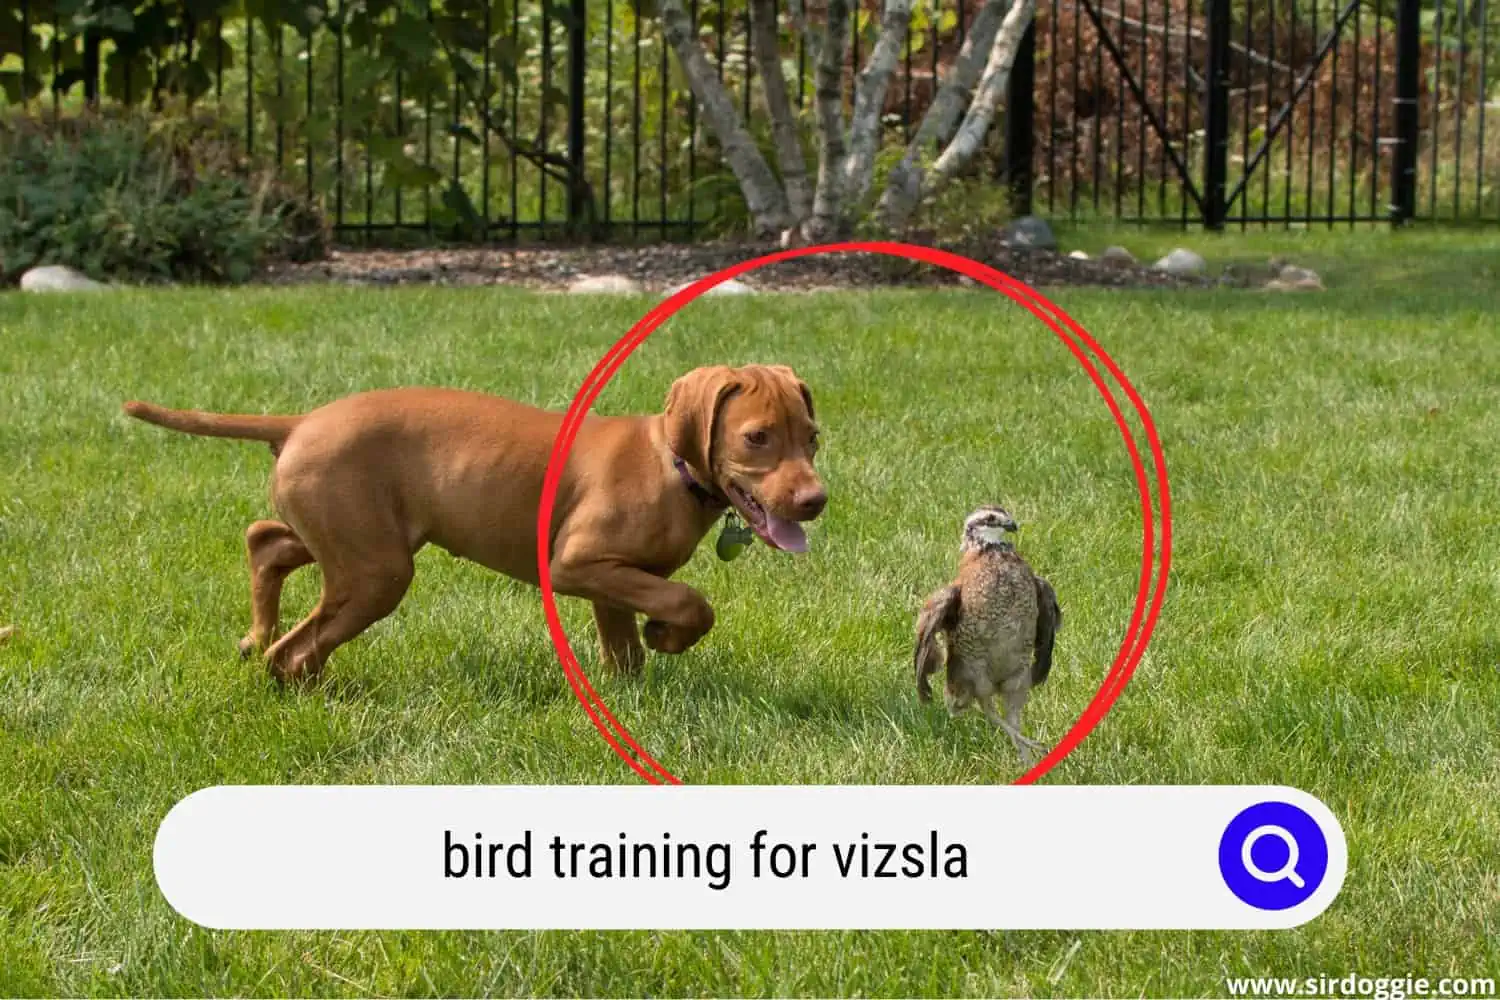 Vizsla bird hunting training in the backyard